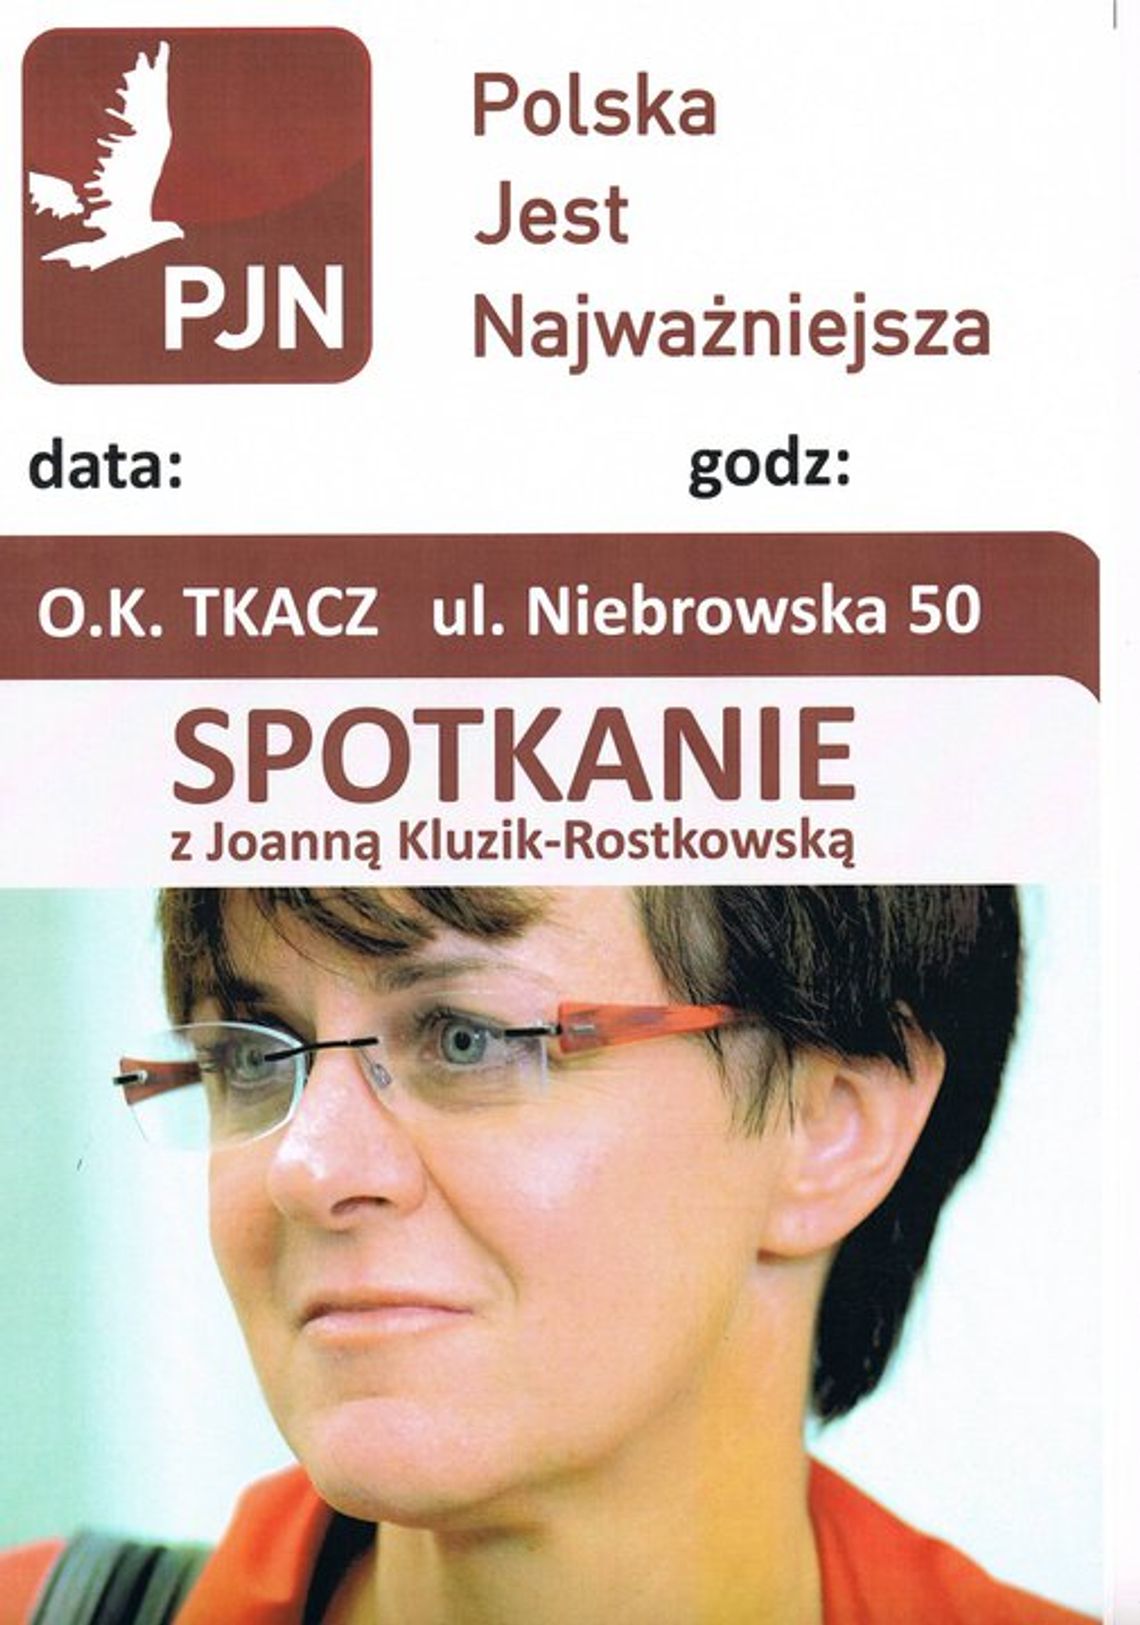 Spotkanie z poseł Joanną Kluzik - Rostkowską